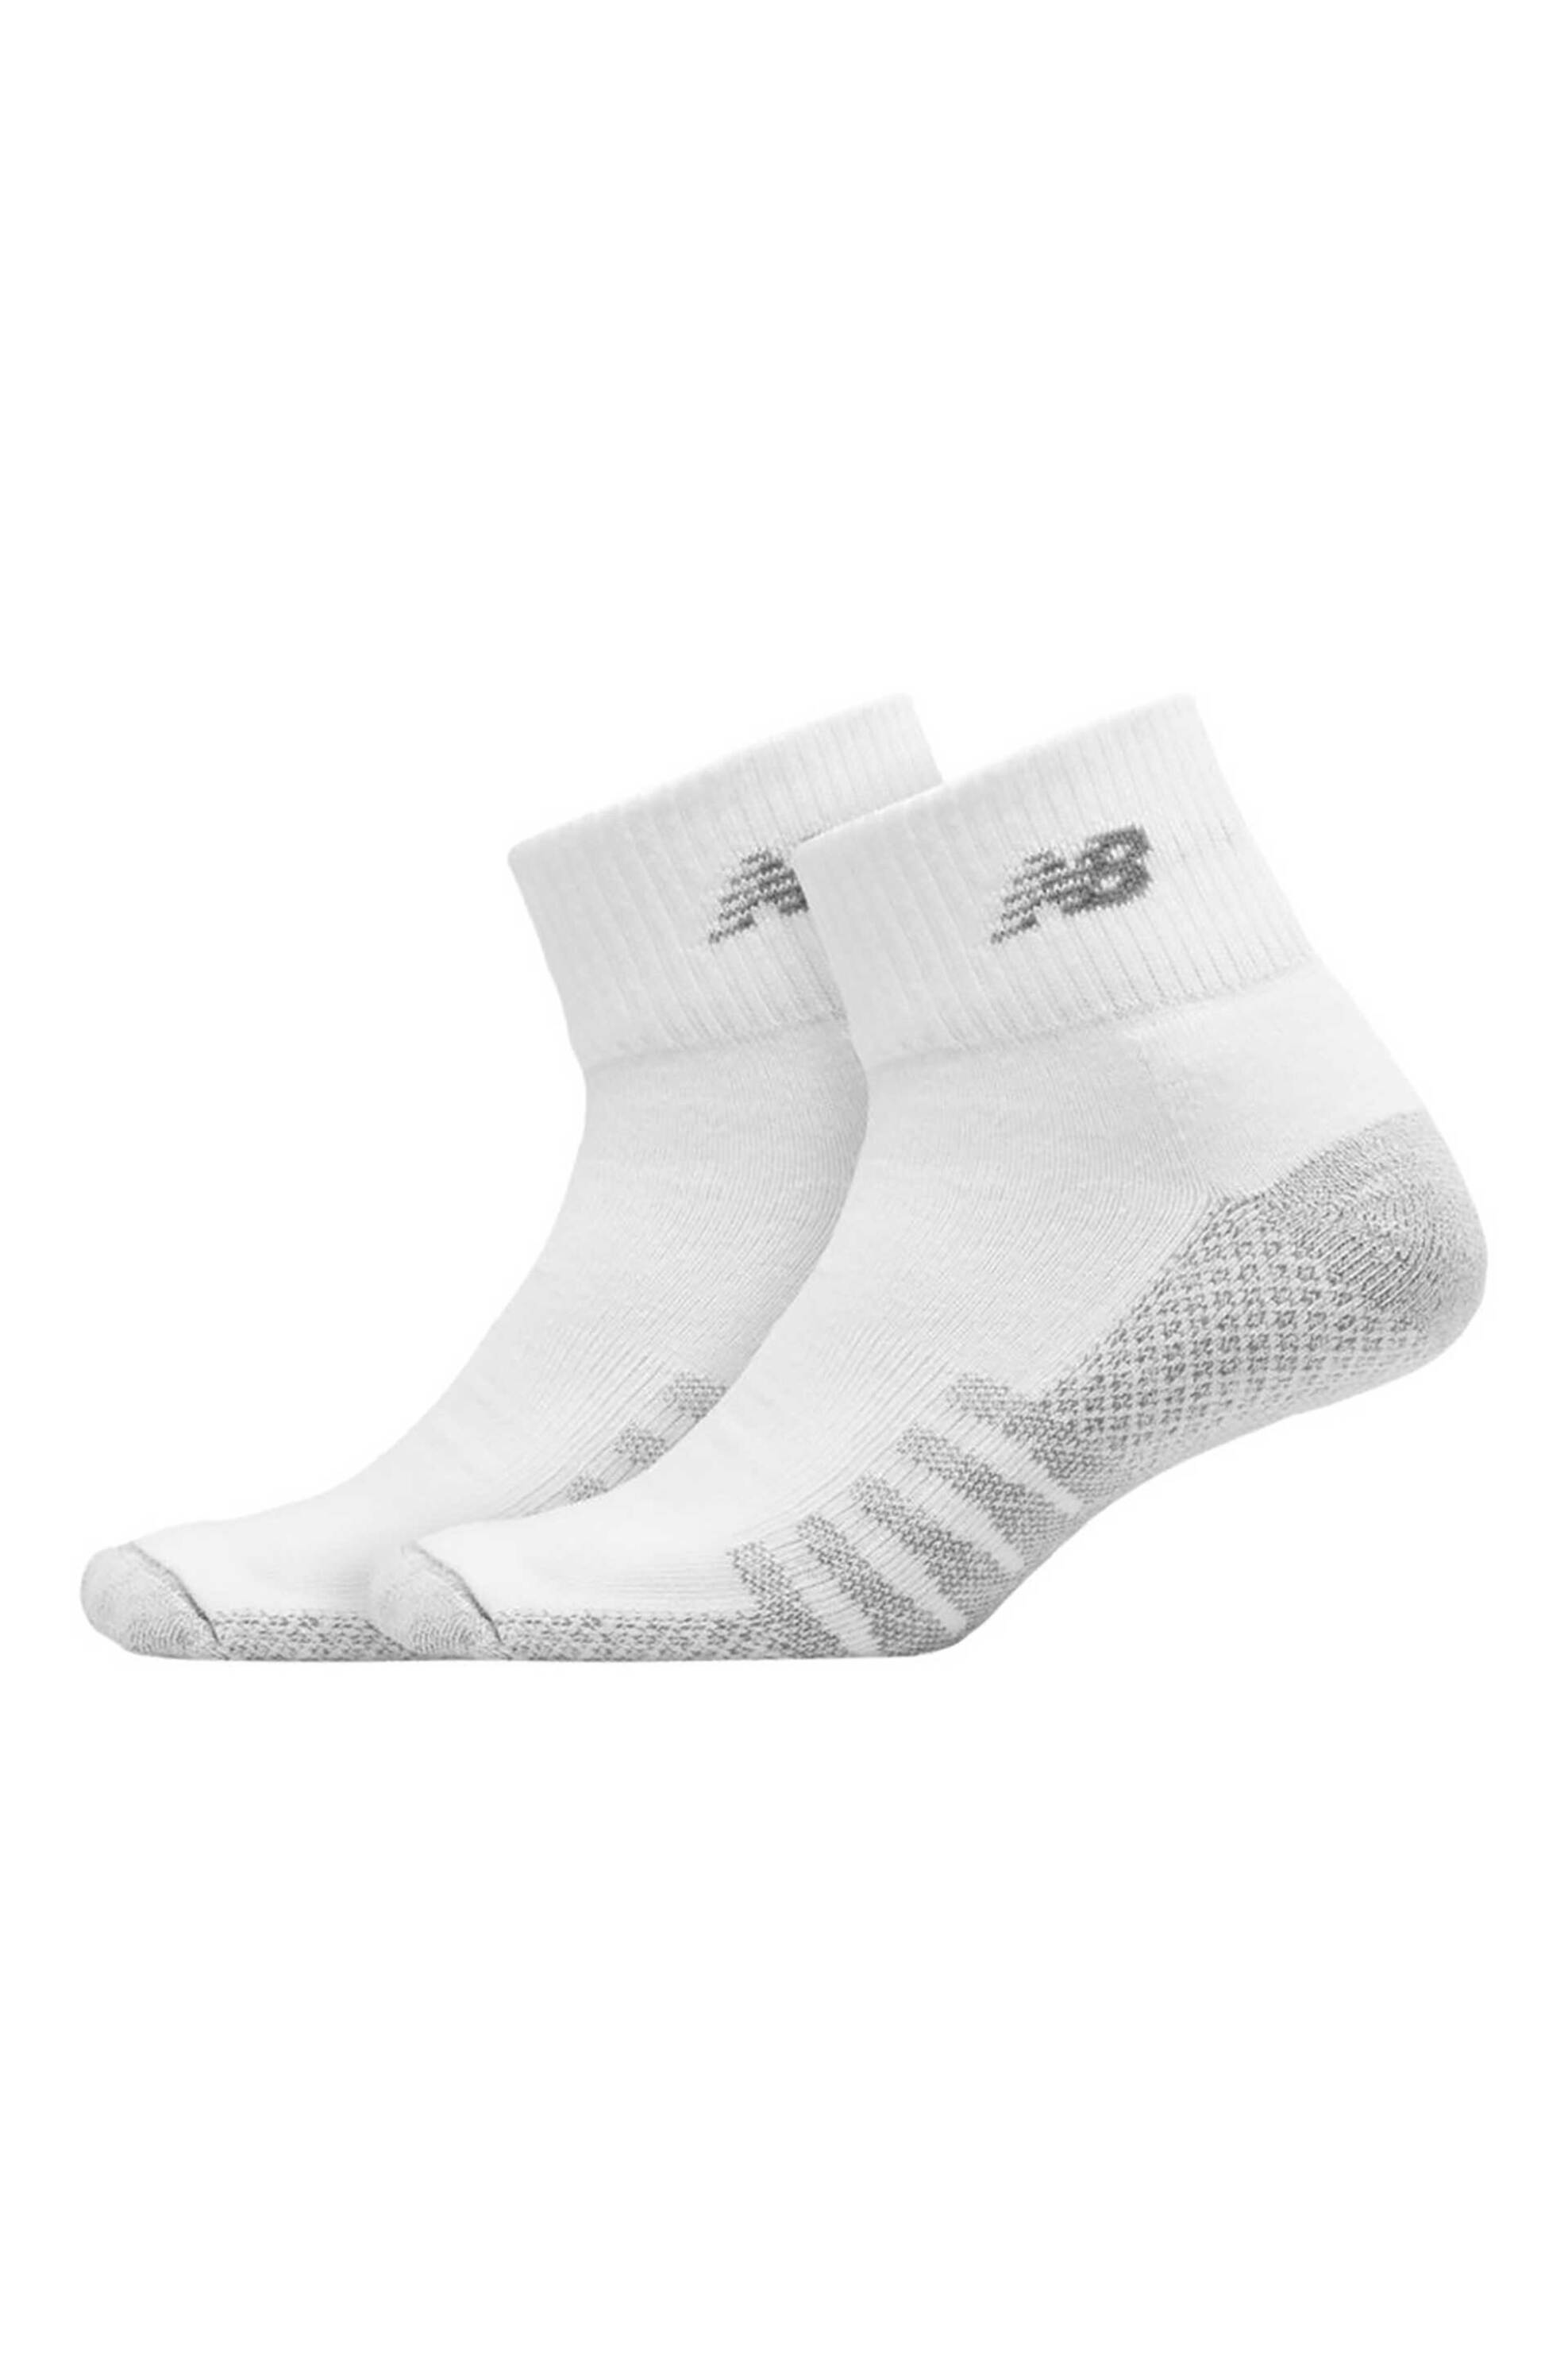 Άνδρας > ΡΟΥΧΑ > Κάλτσες > Κοντές Κάλτσες New Balance unisex σετ κάλτσες με logo print "Coolmax Quarter" (2 τεμάχια) - LAS70332 Λευκό